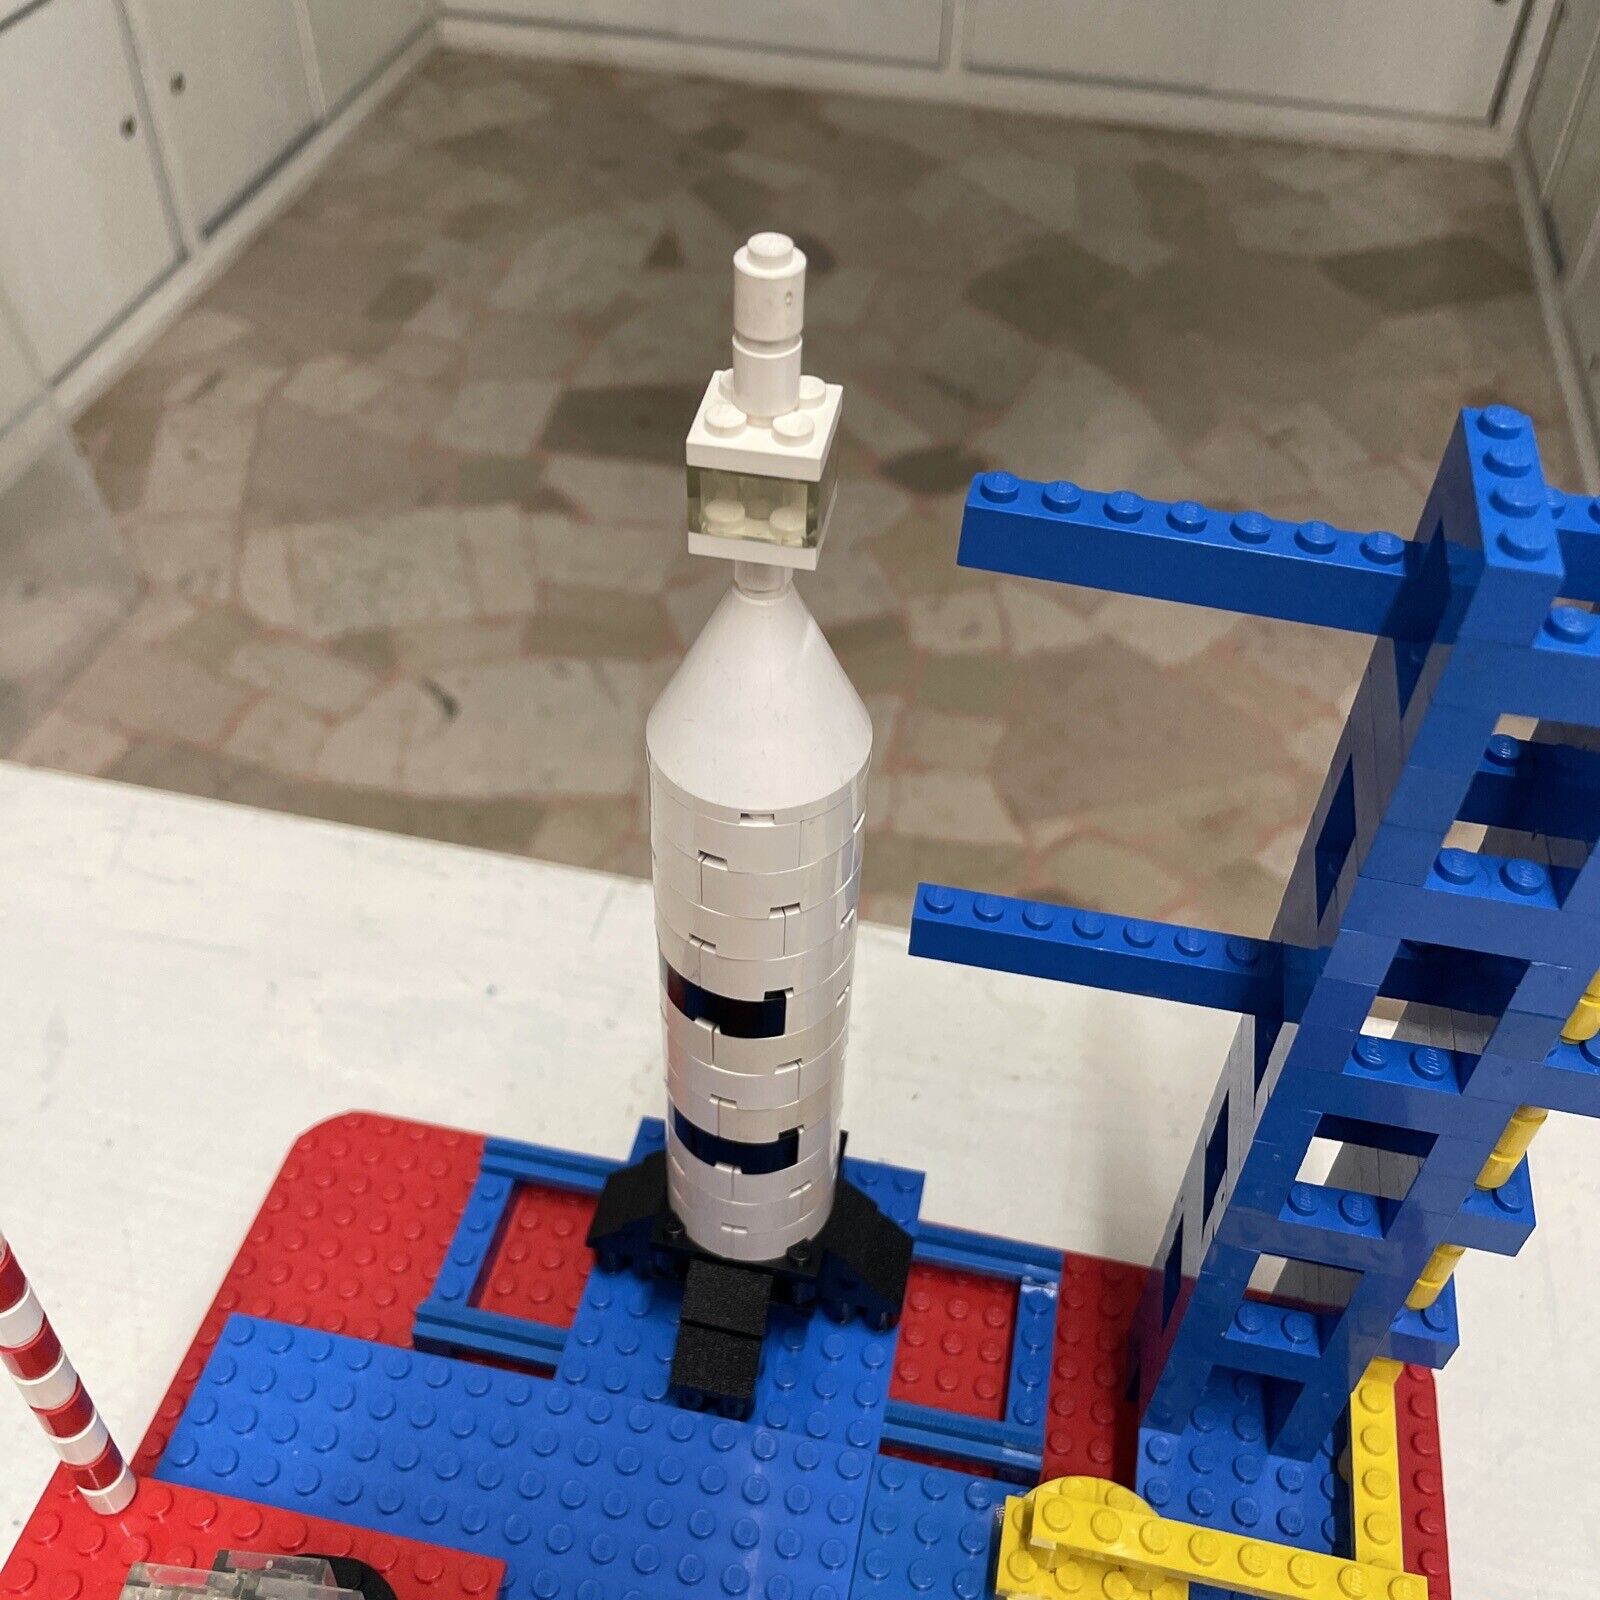 Lego-LEGOLAND-Set-358-Rocket-Base-vintage-70-80-145504901889-7